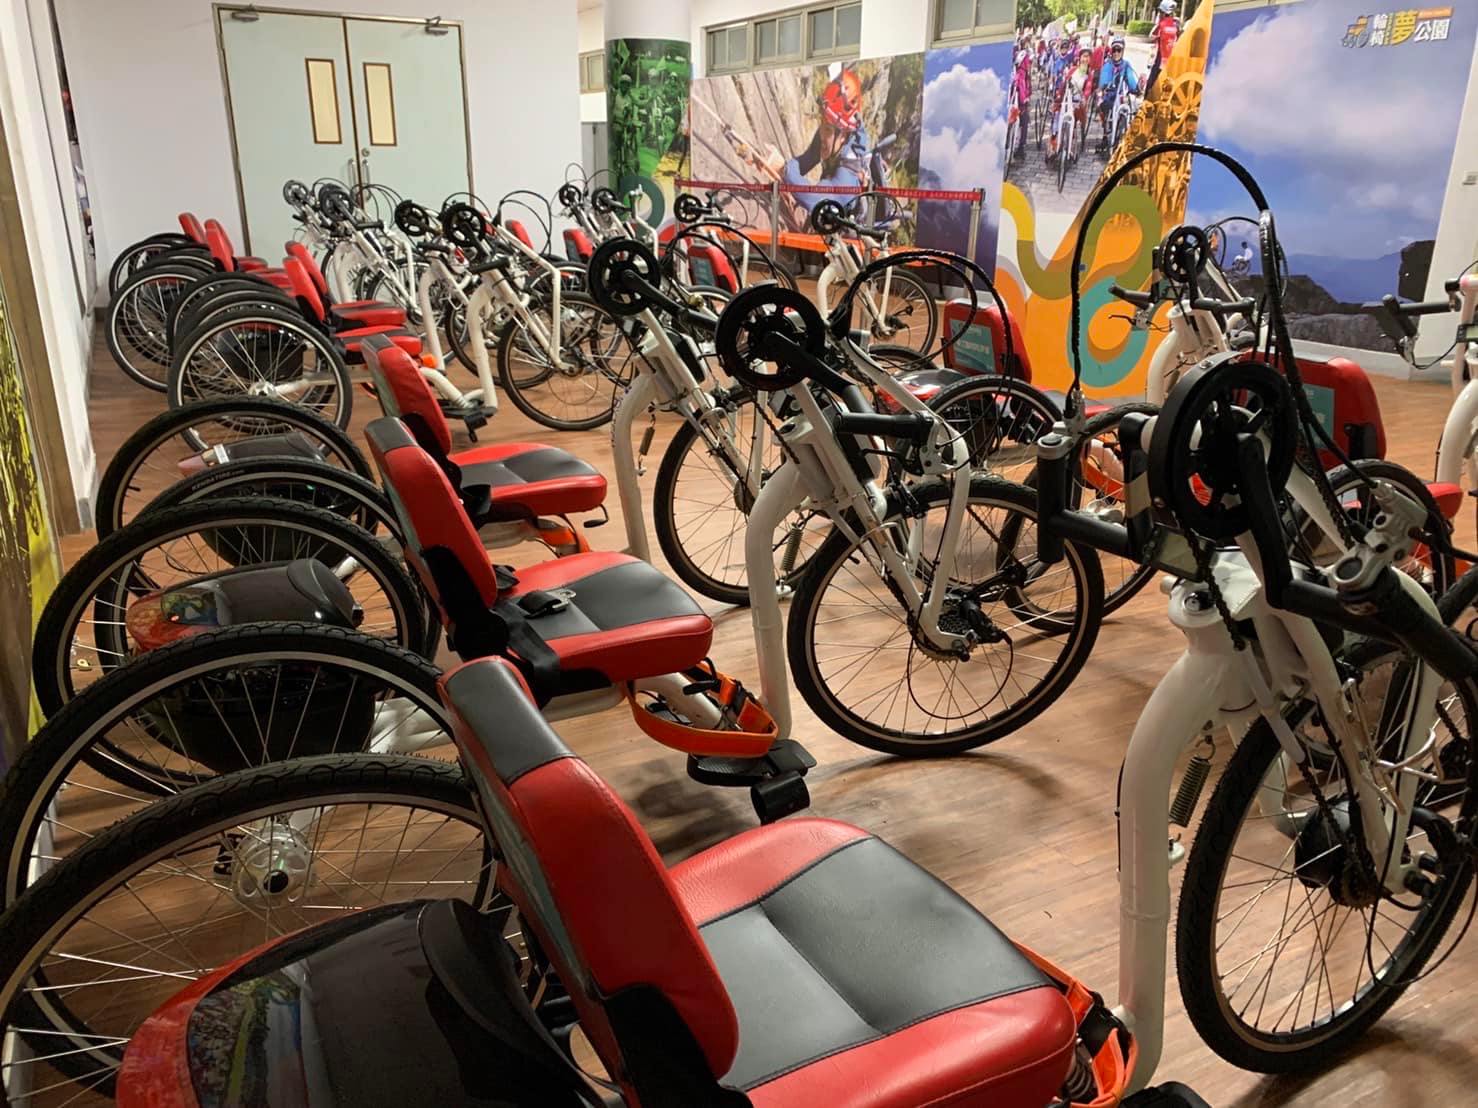  位於板樹體育館的「新北市輪椅夢公園」配置眾多手搖車提供身障朋友騎乘服務